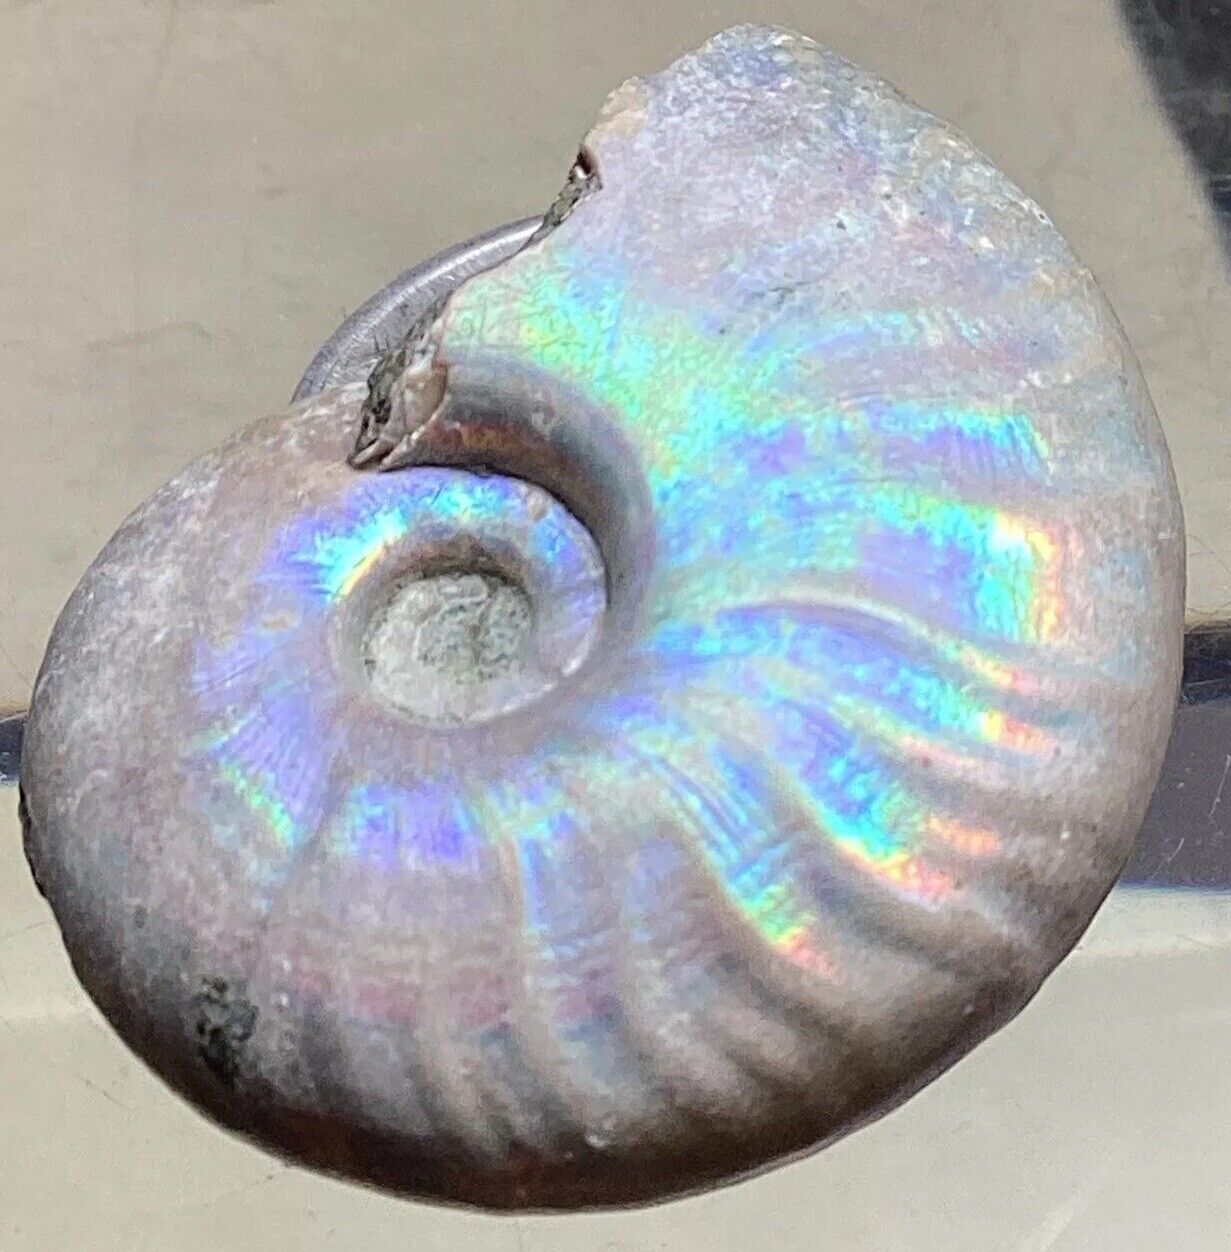 Rare Opalized Nacre Ancient Whole Ammonite Madagascar #271